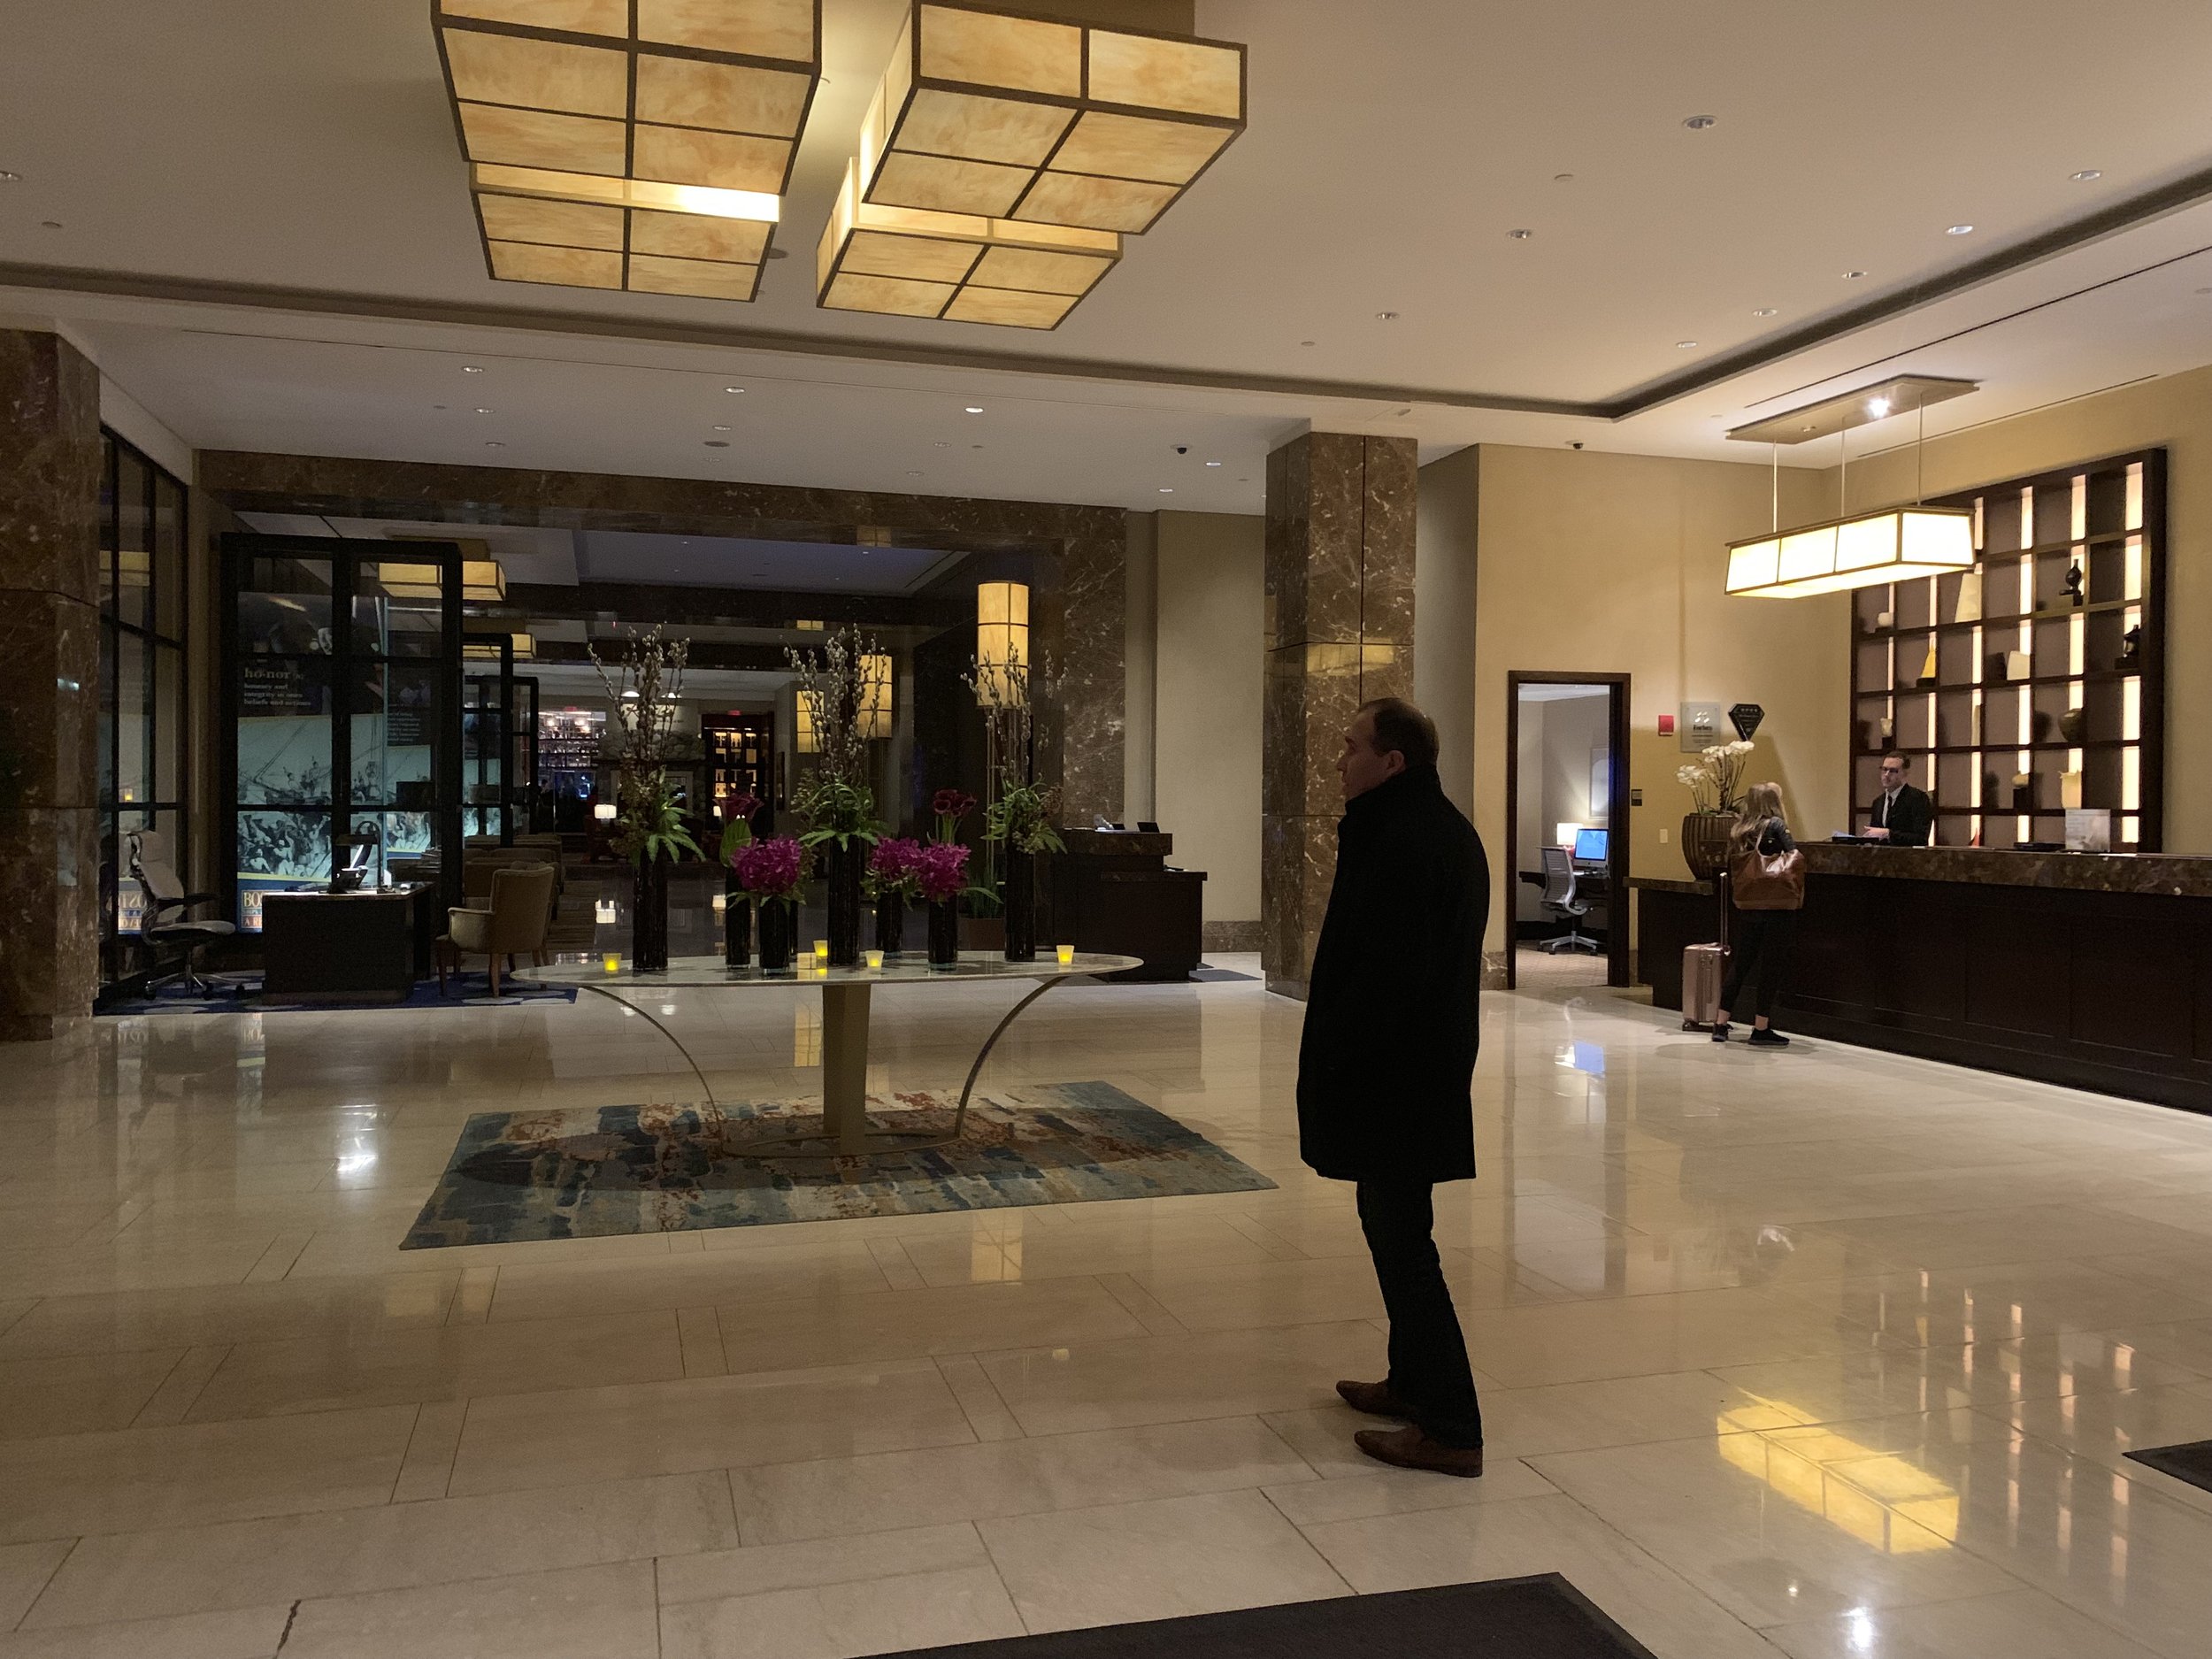 The Intercontinental Hotel - Boston, MA